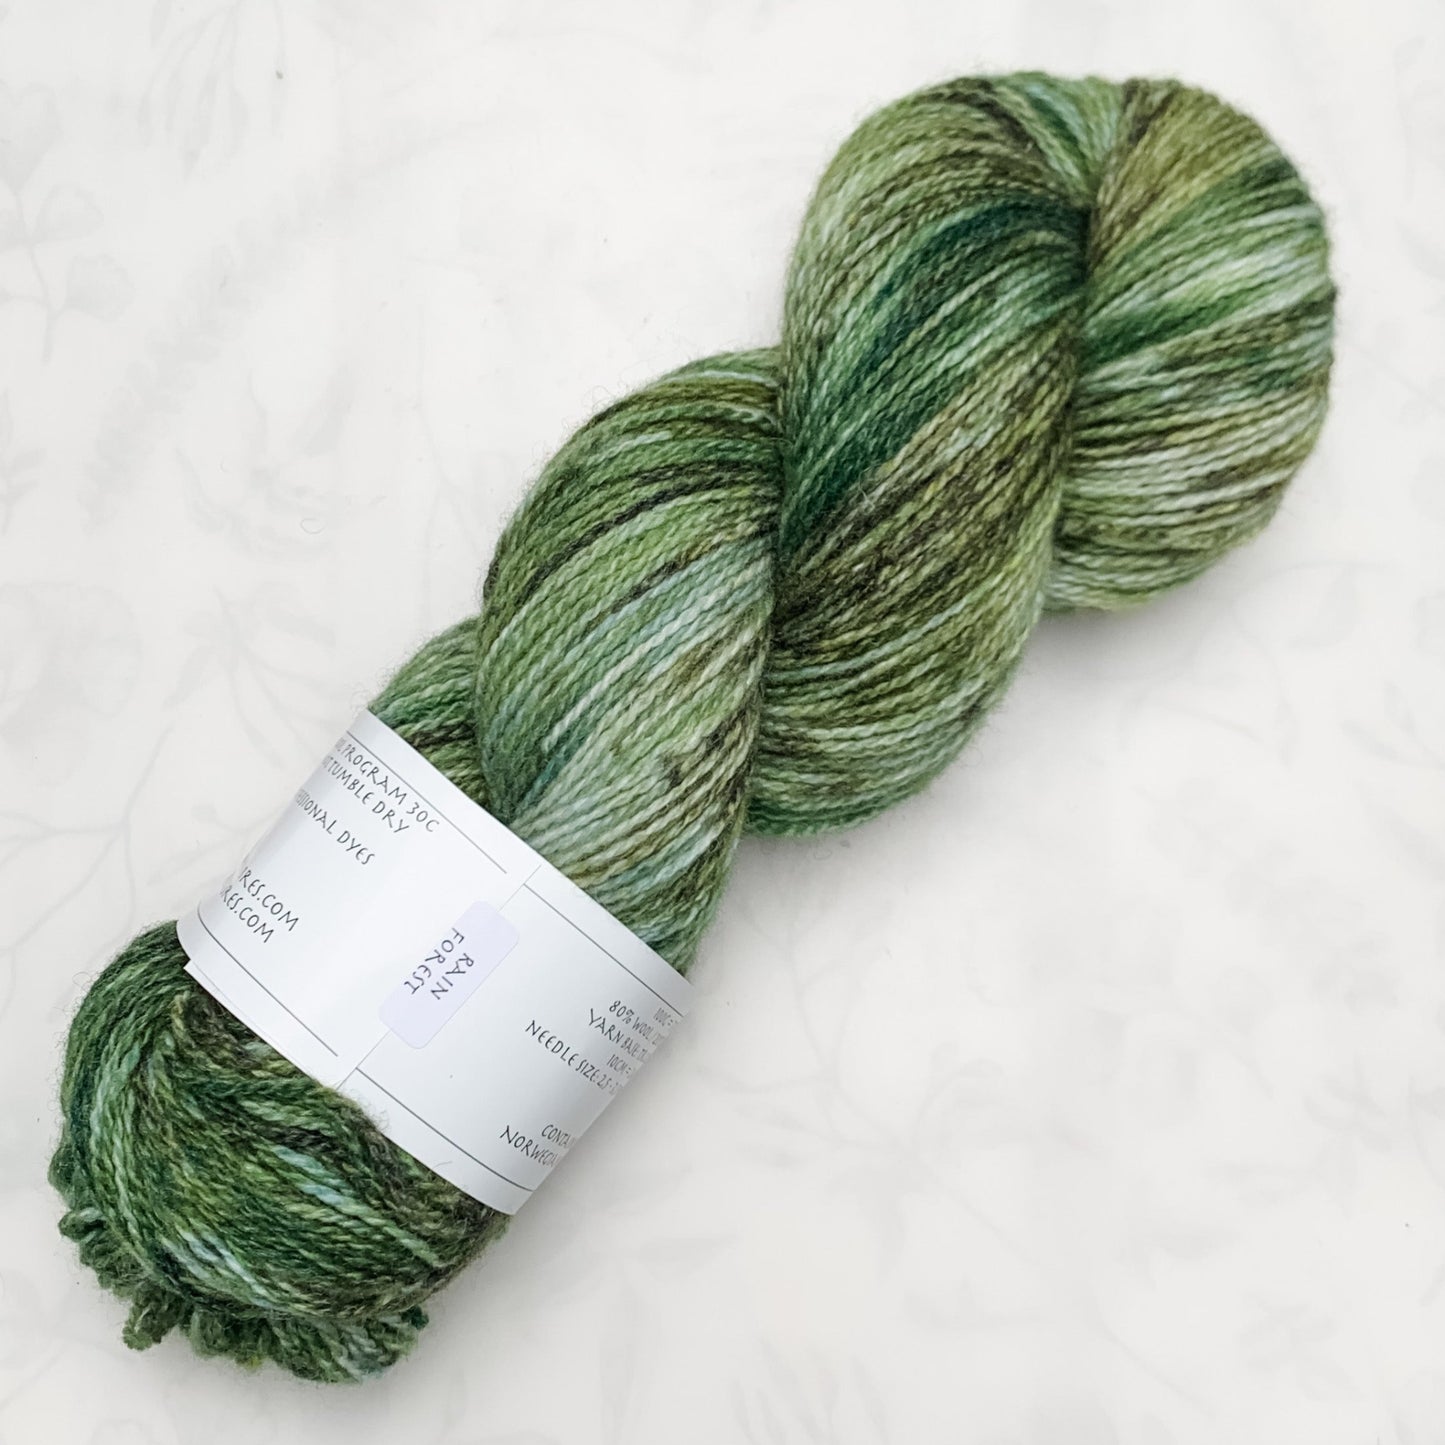 Rain Forest - Trollfjord sock - Hand Dyed Yarn - Variegated Yarn